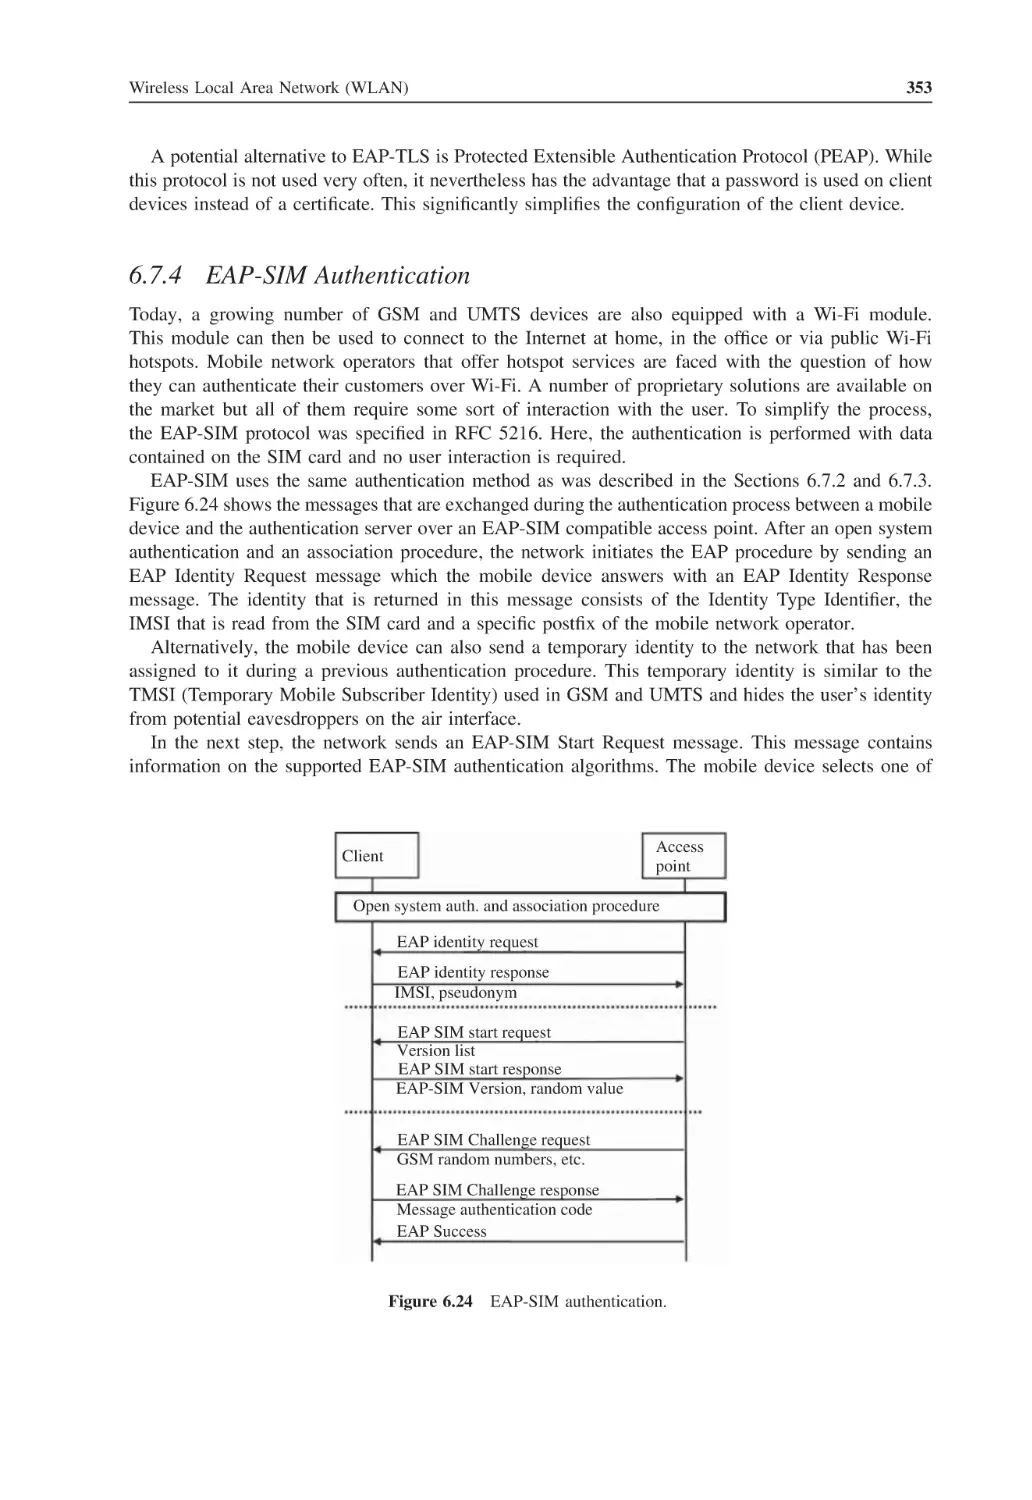 6.7.4 EAP-SIM Authentication